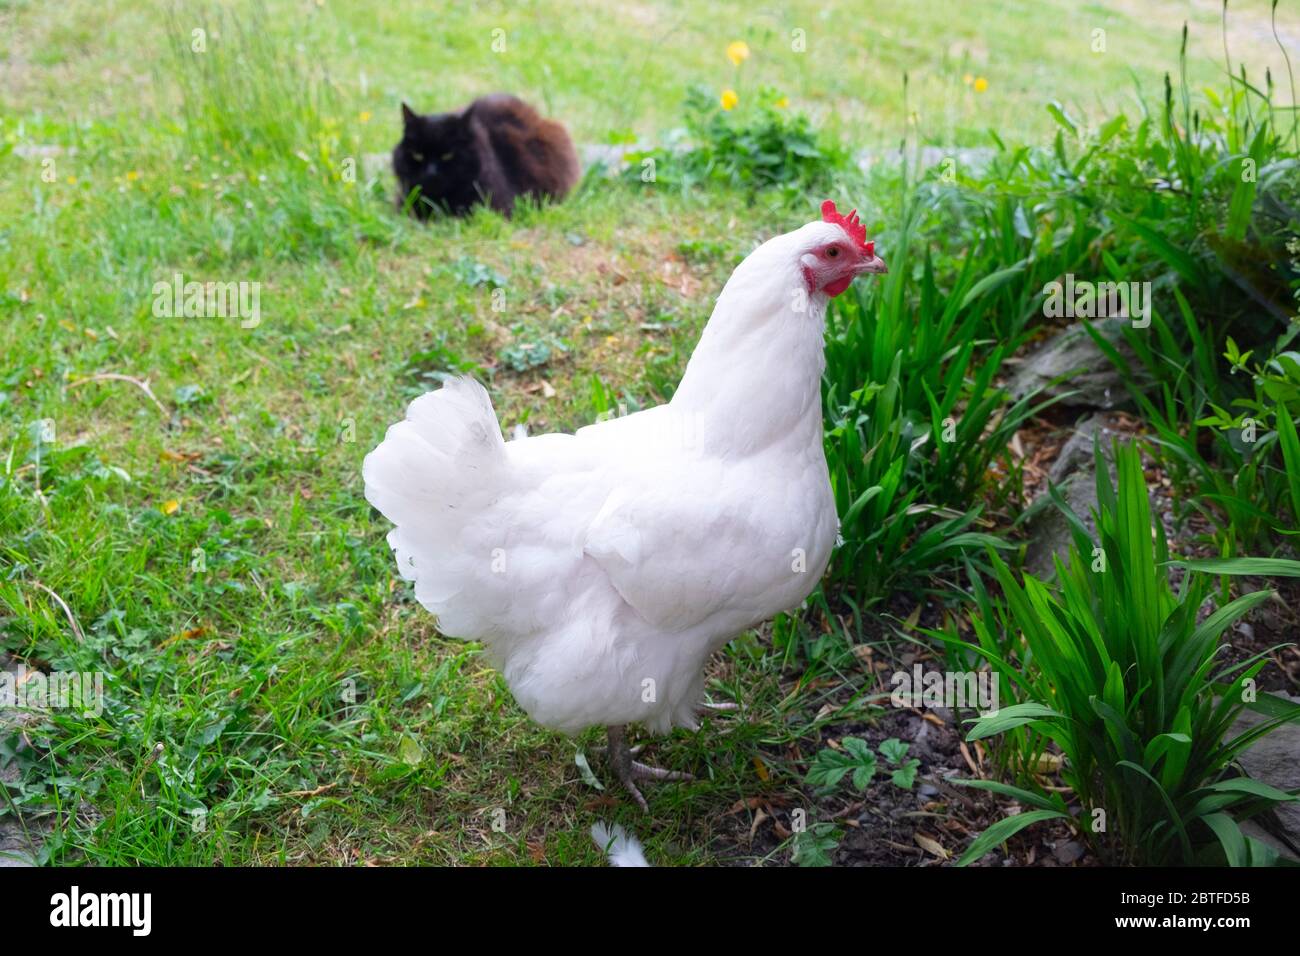 Premium Photo  Brahma chicken in a garden in spring